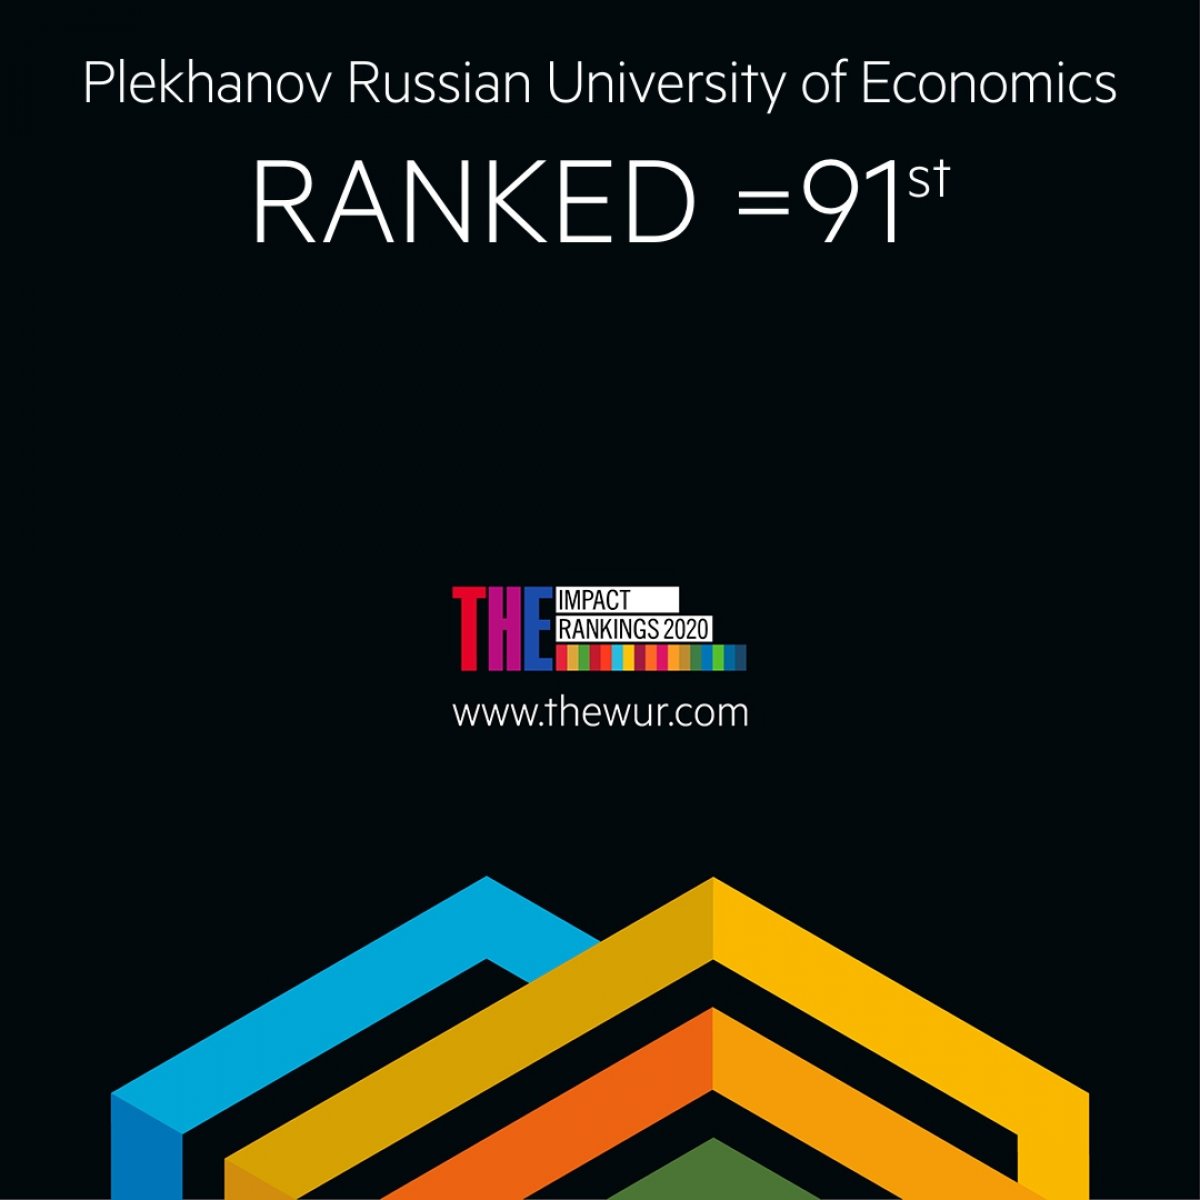 ⚡РЭУ им. Г.В. Плеханова занял 3-е место в мире (1-е среди российских вузов) по обеспечению всеохватного и справедливого качественного образования и вошел в топ-100 вузов мира по соответствию целям ООН в области устойчивого развития